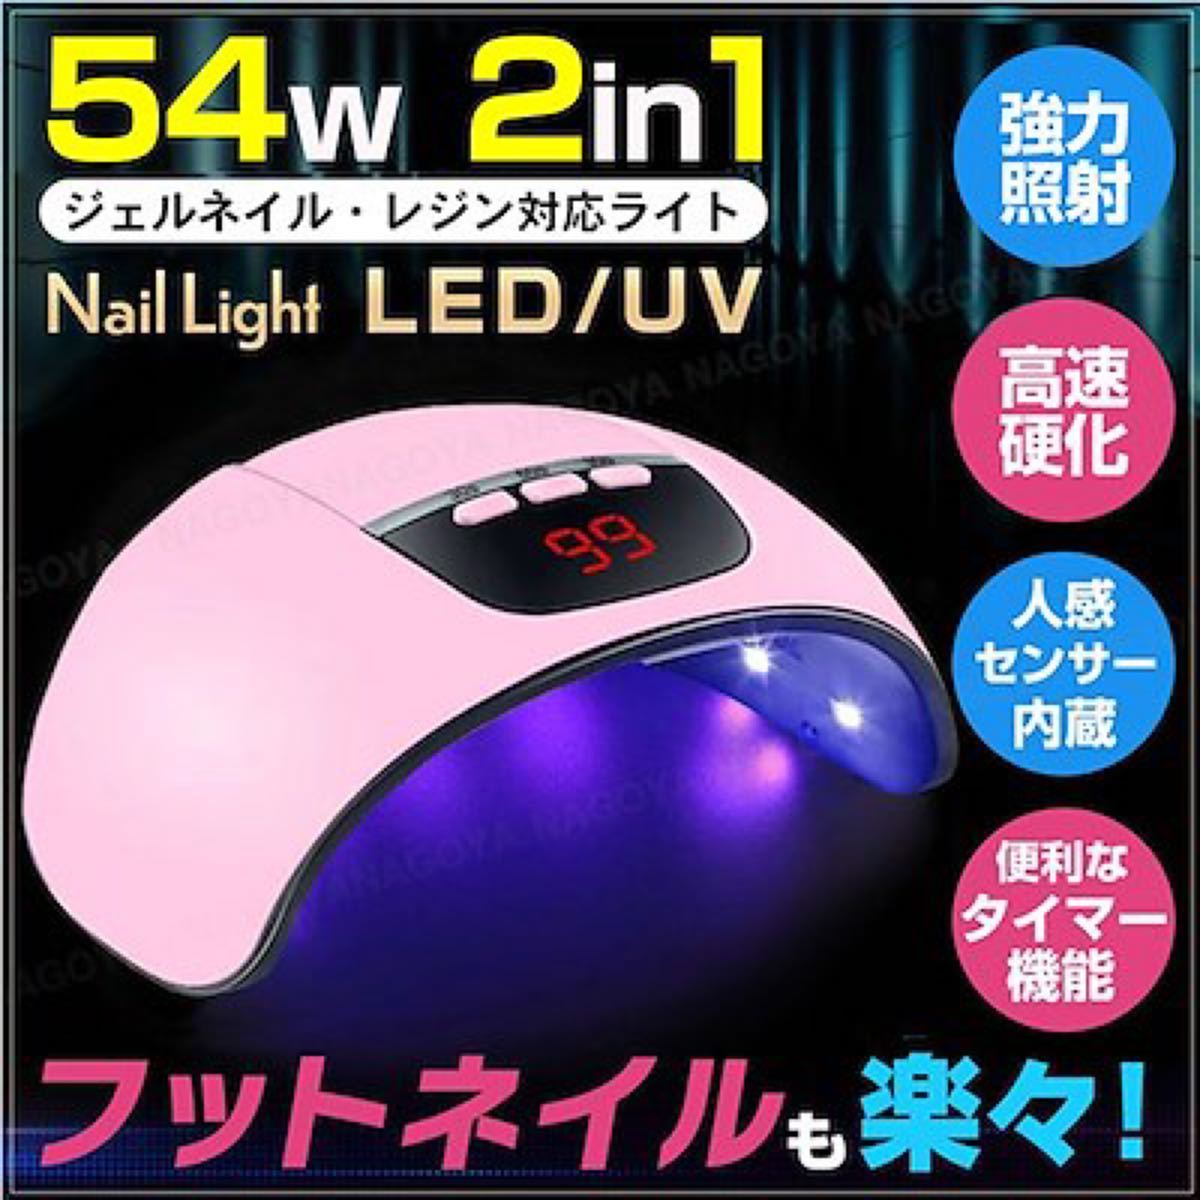 ネイルライト ジェルネイル 54W LED UV レジン ドライヤー 紫外線